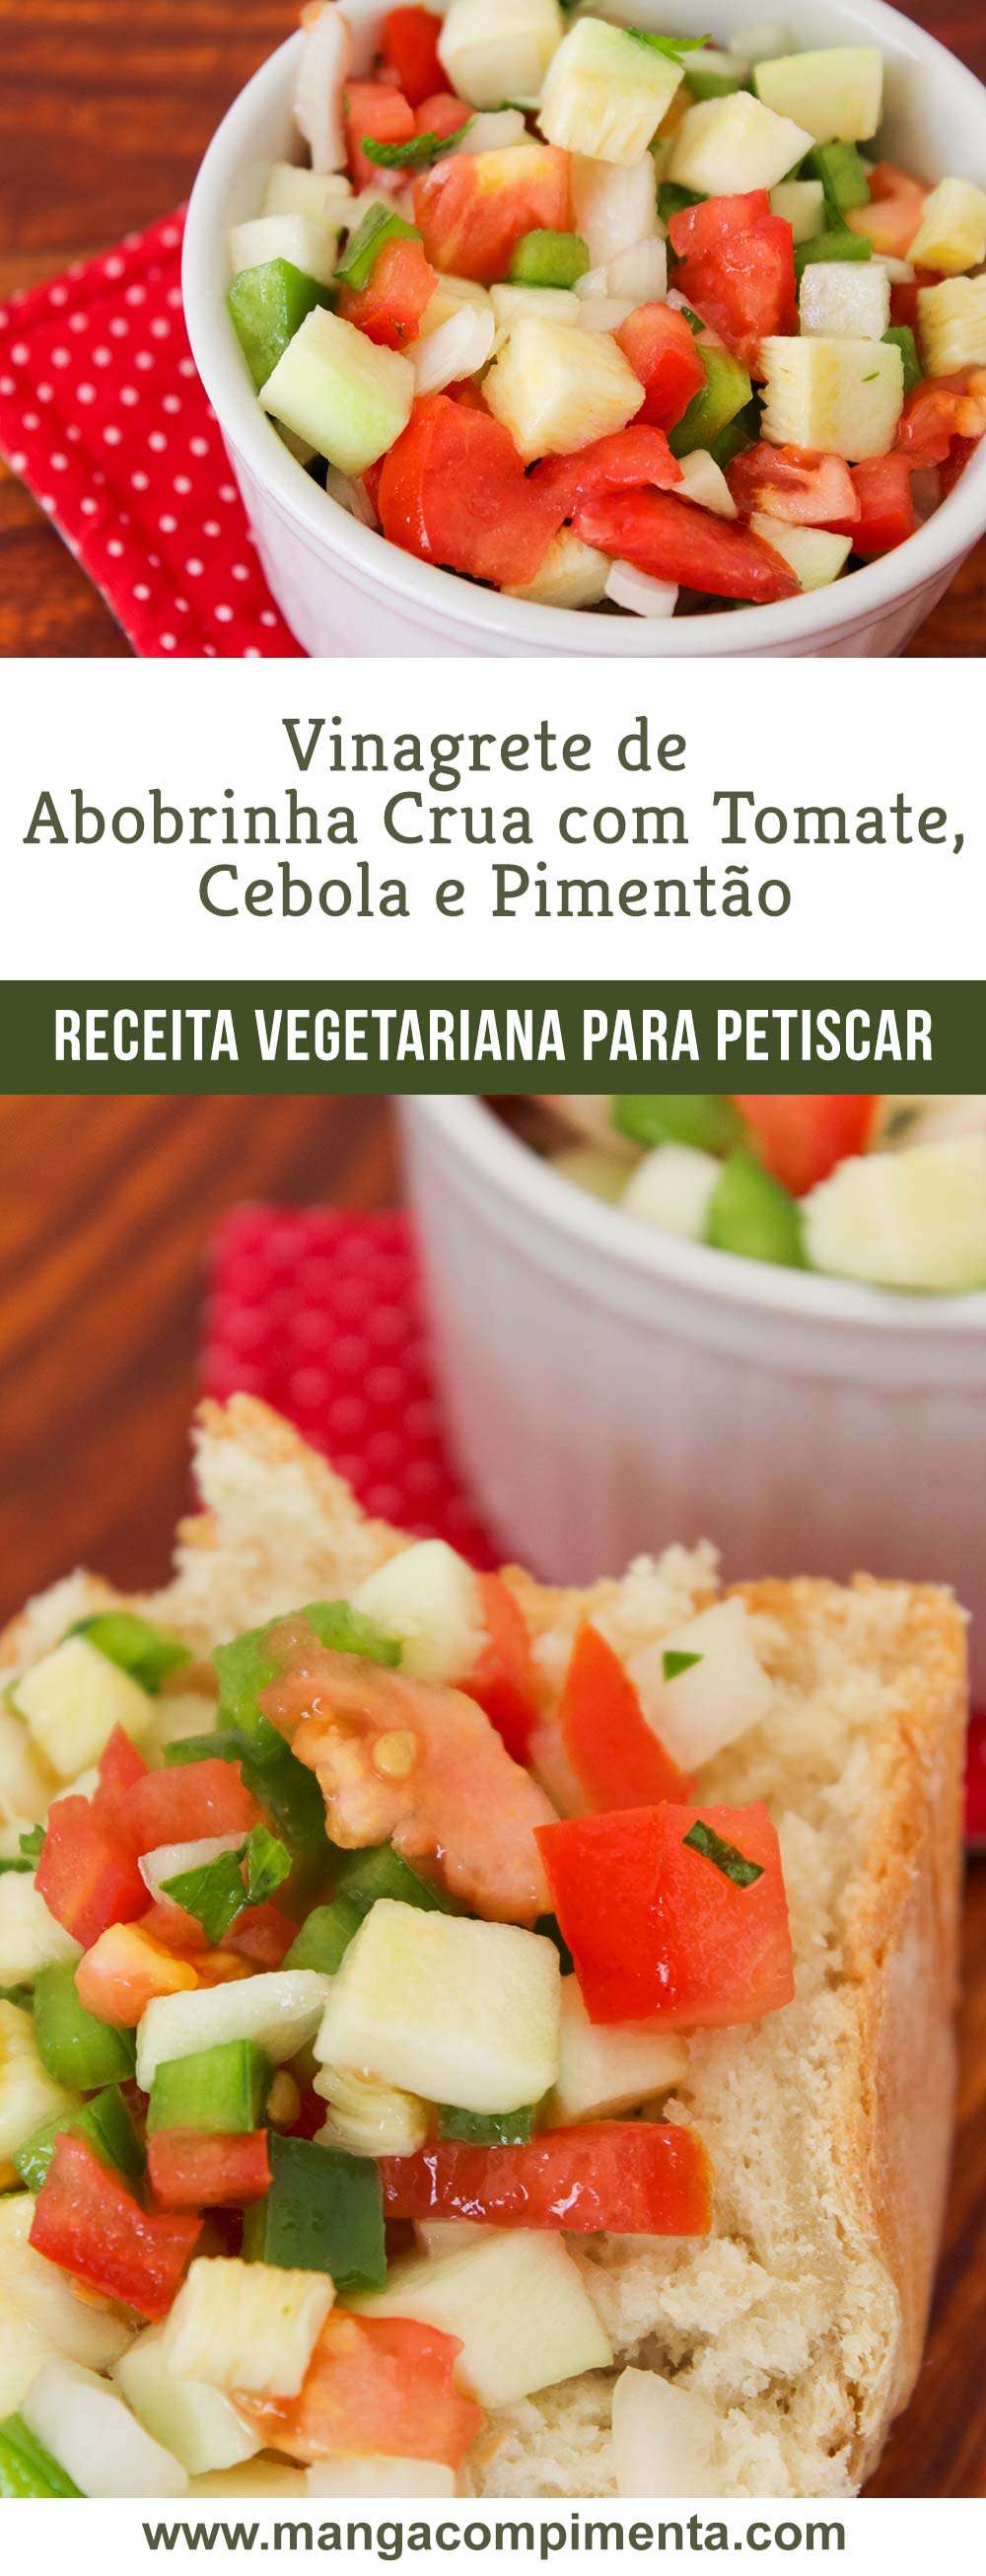 Vinagrete de Abobrinha Crua com Tomate, Cebola e Pimentão | Para lanchar e petiscar!